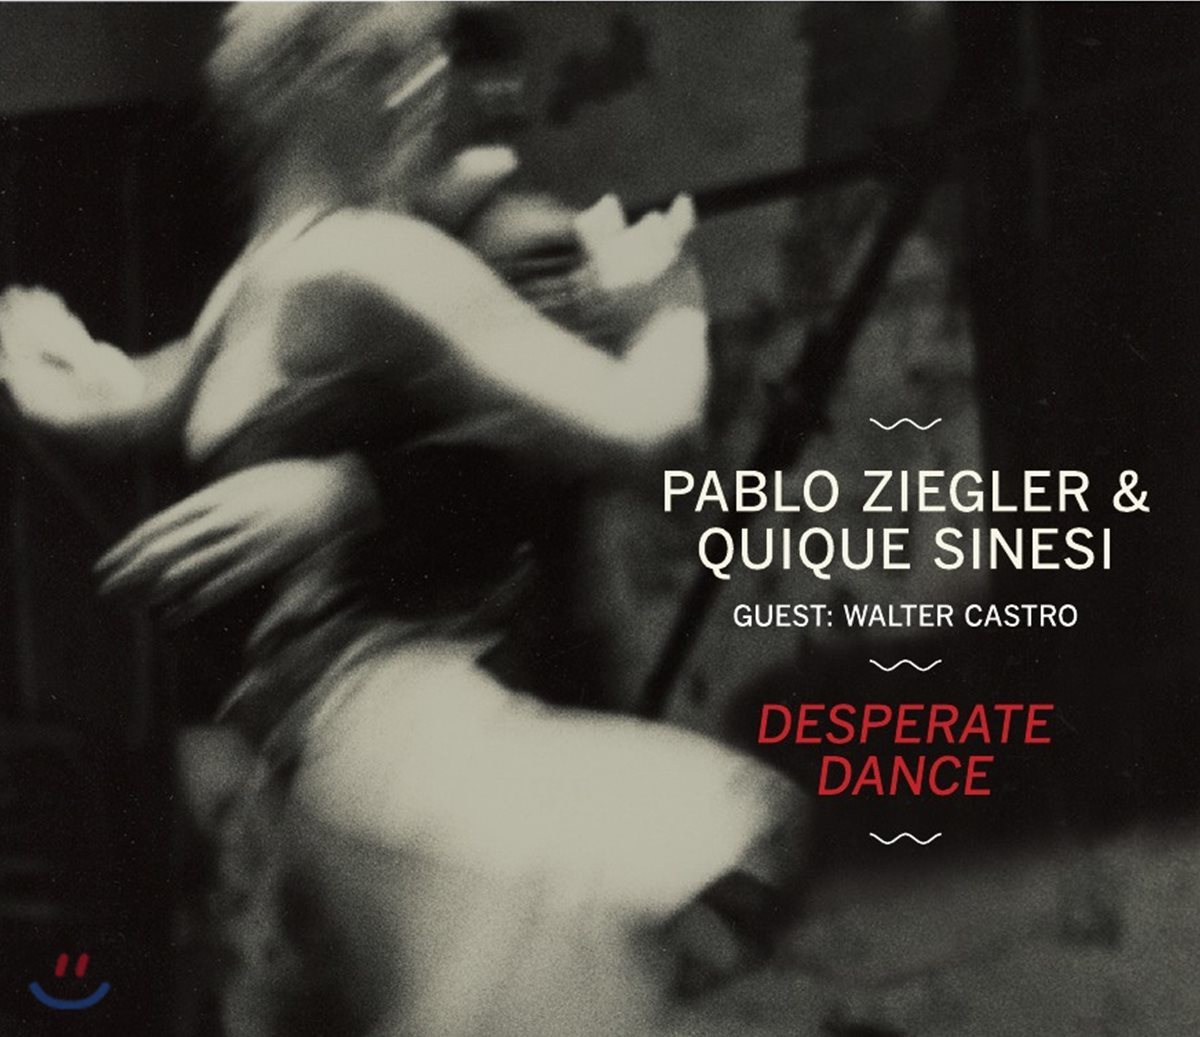 Pablo Ziegler / Quique Sinesi (파블로 지에글러 / 퀴큐에 시네시) - Desperate Dance 파블로 지글러 뉴 탱고 듀오